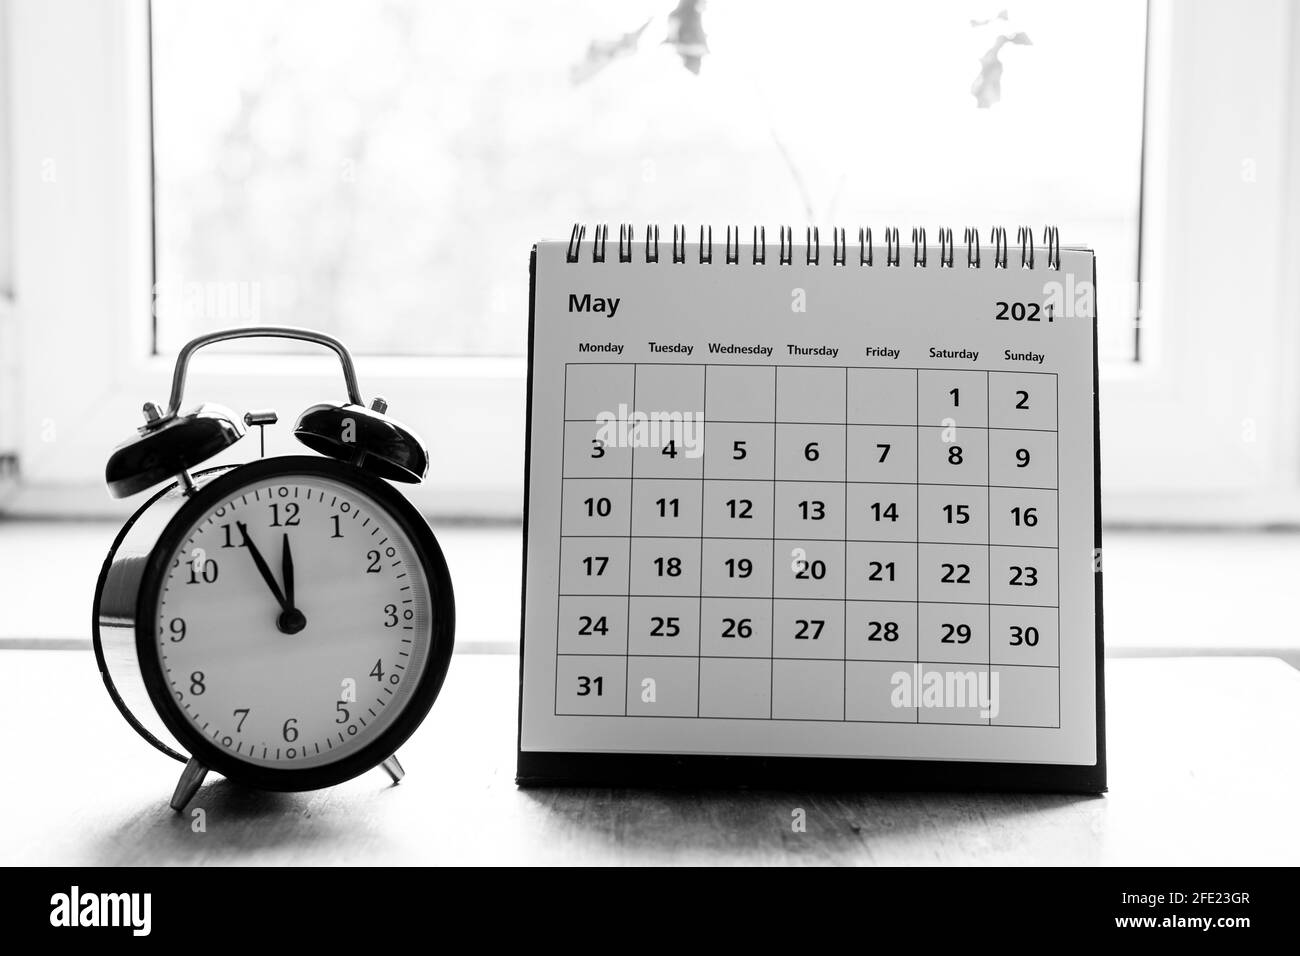 Calendario in scala di grigi di maggio 2021 - pagina del mese in cui è riportata la data tavolo di legno Foto Stock